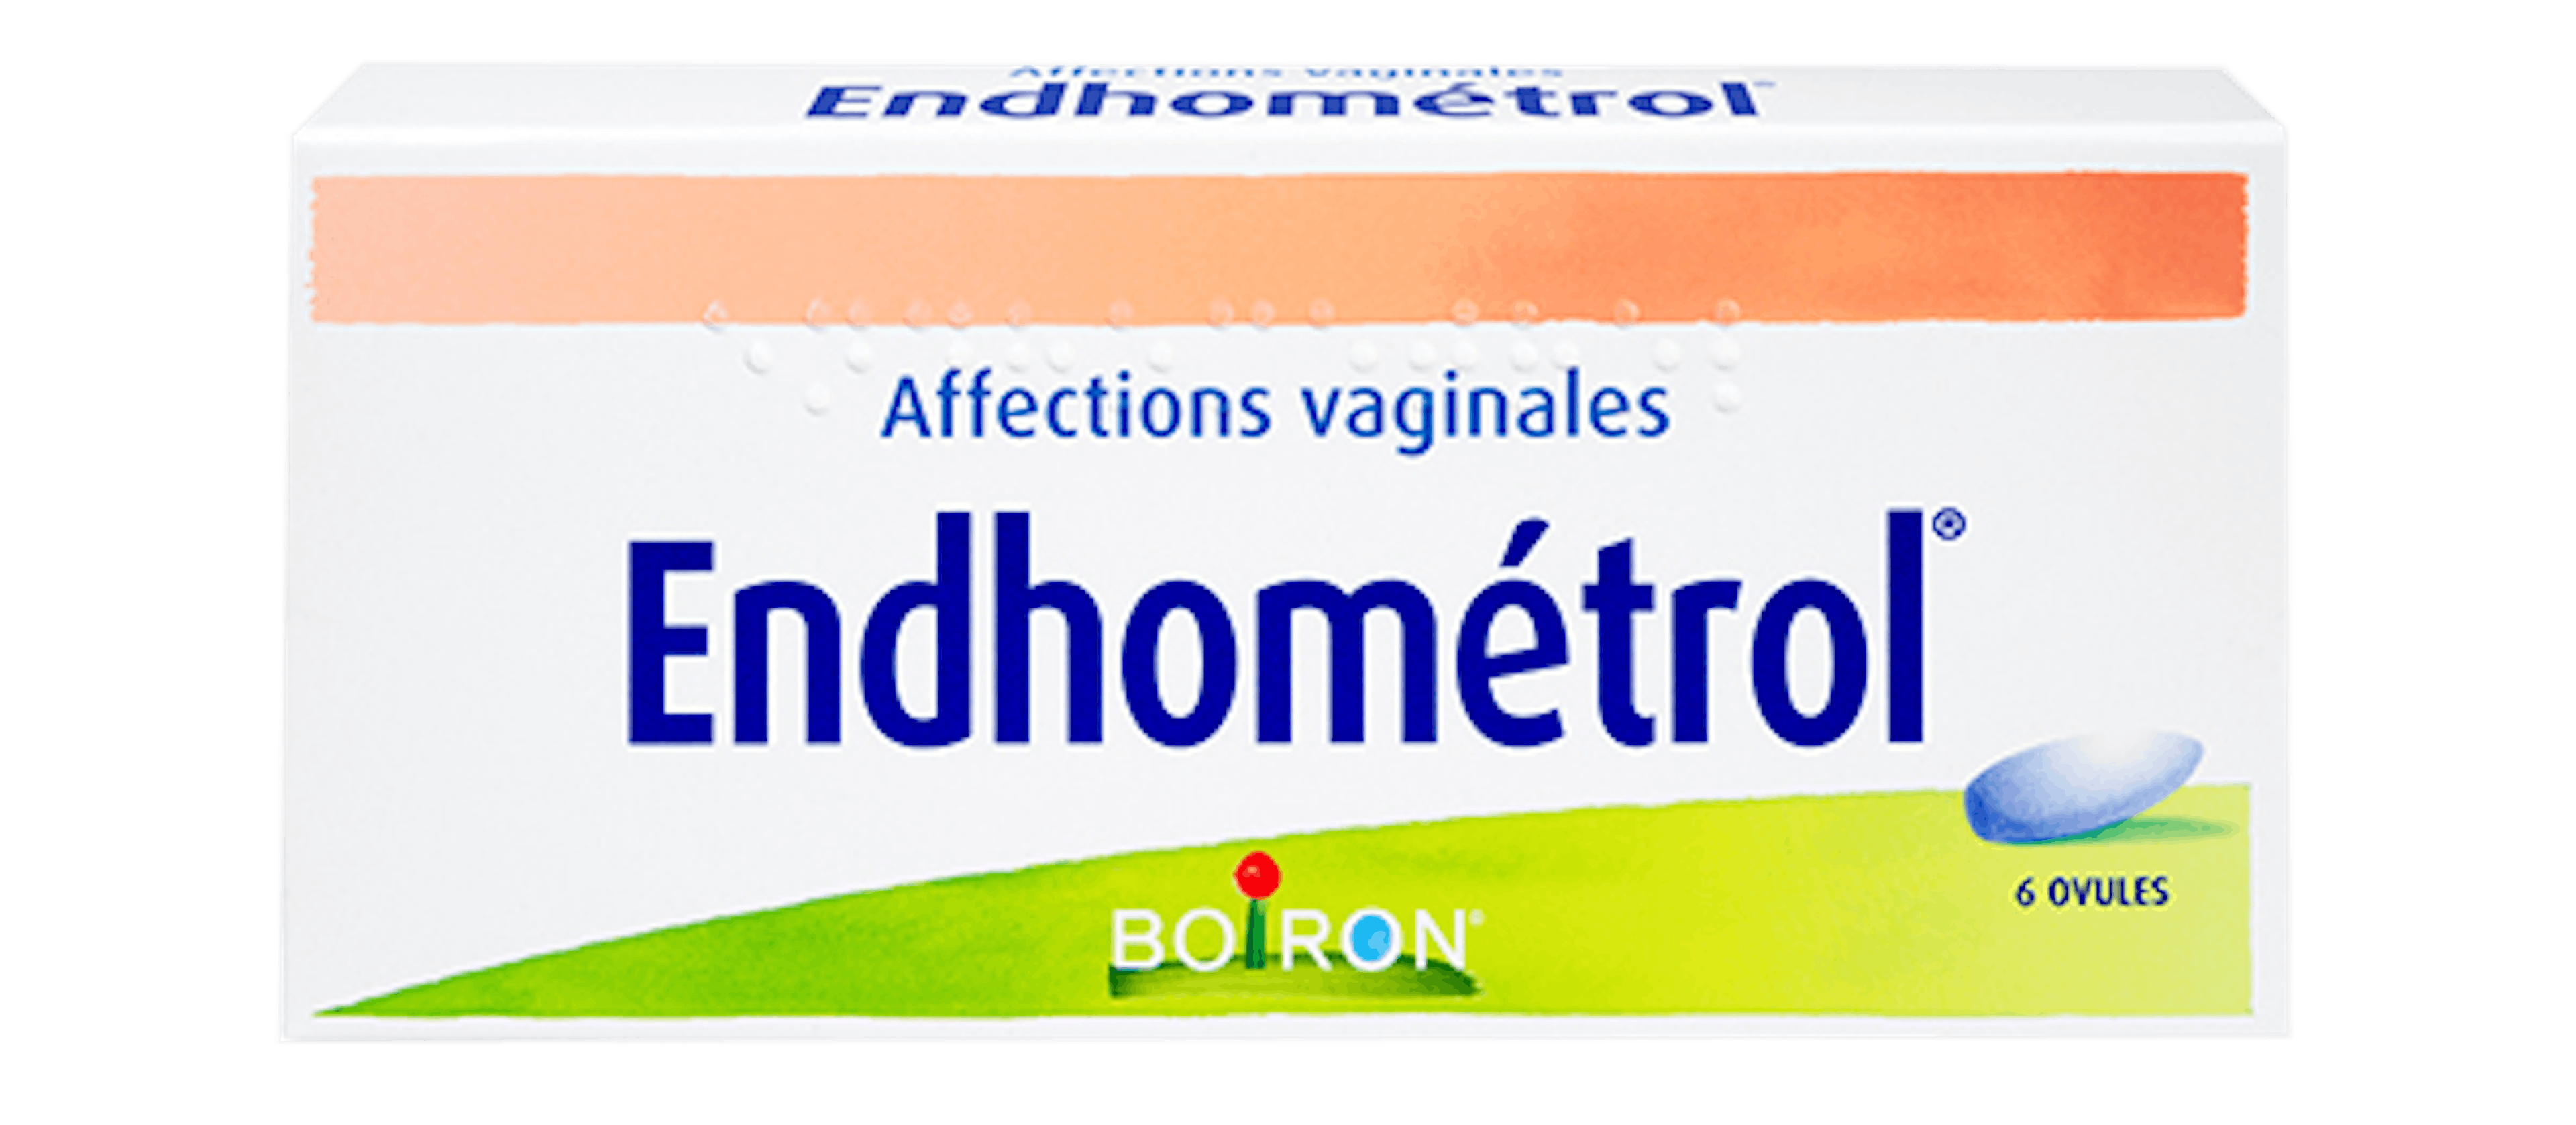 Endhométrol®